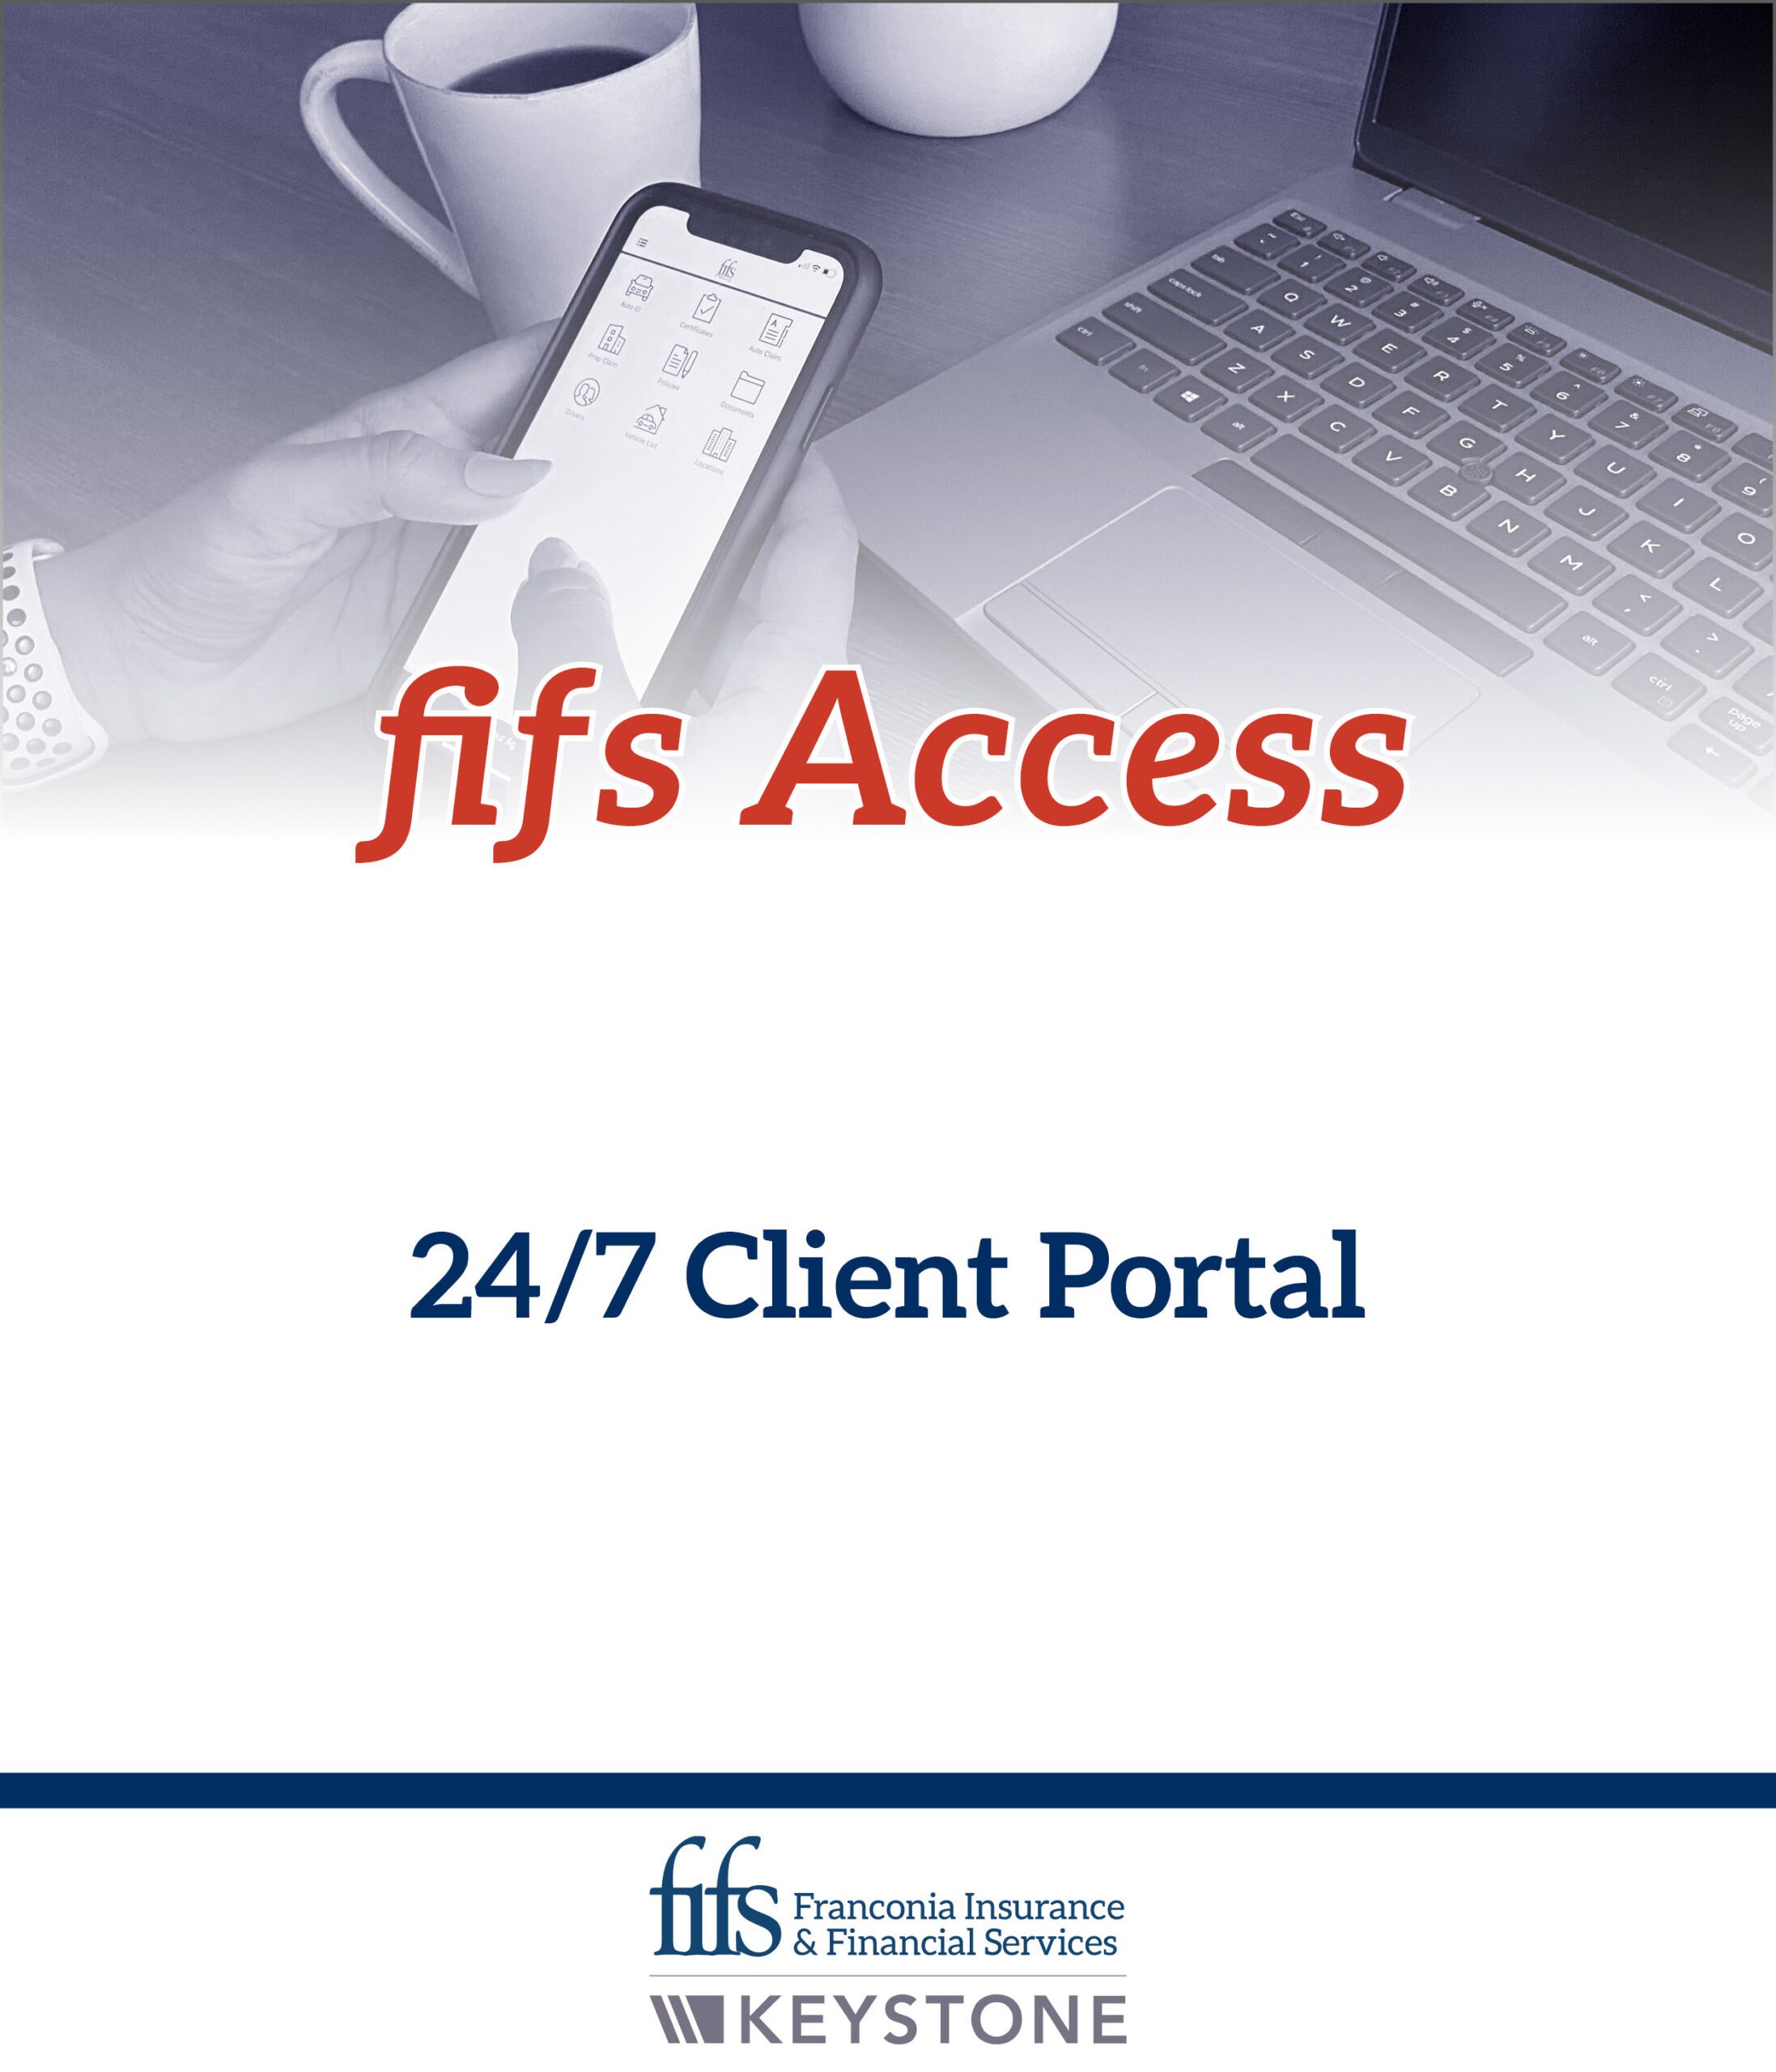 fifs Access